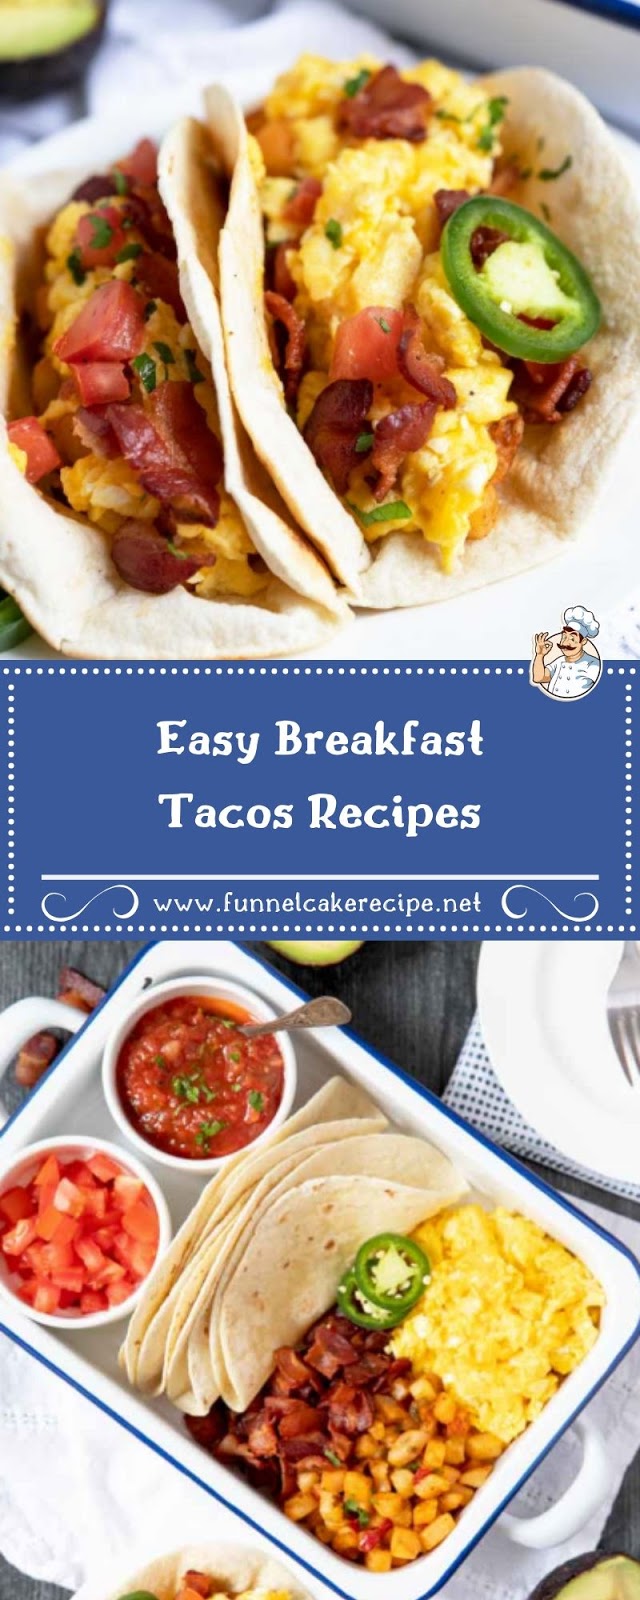 Easy Breakfast Tacos Recipes